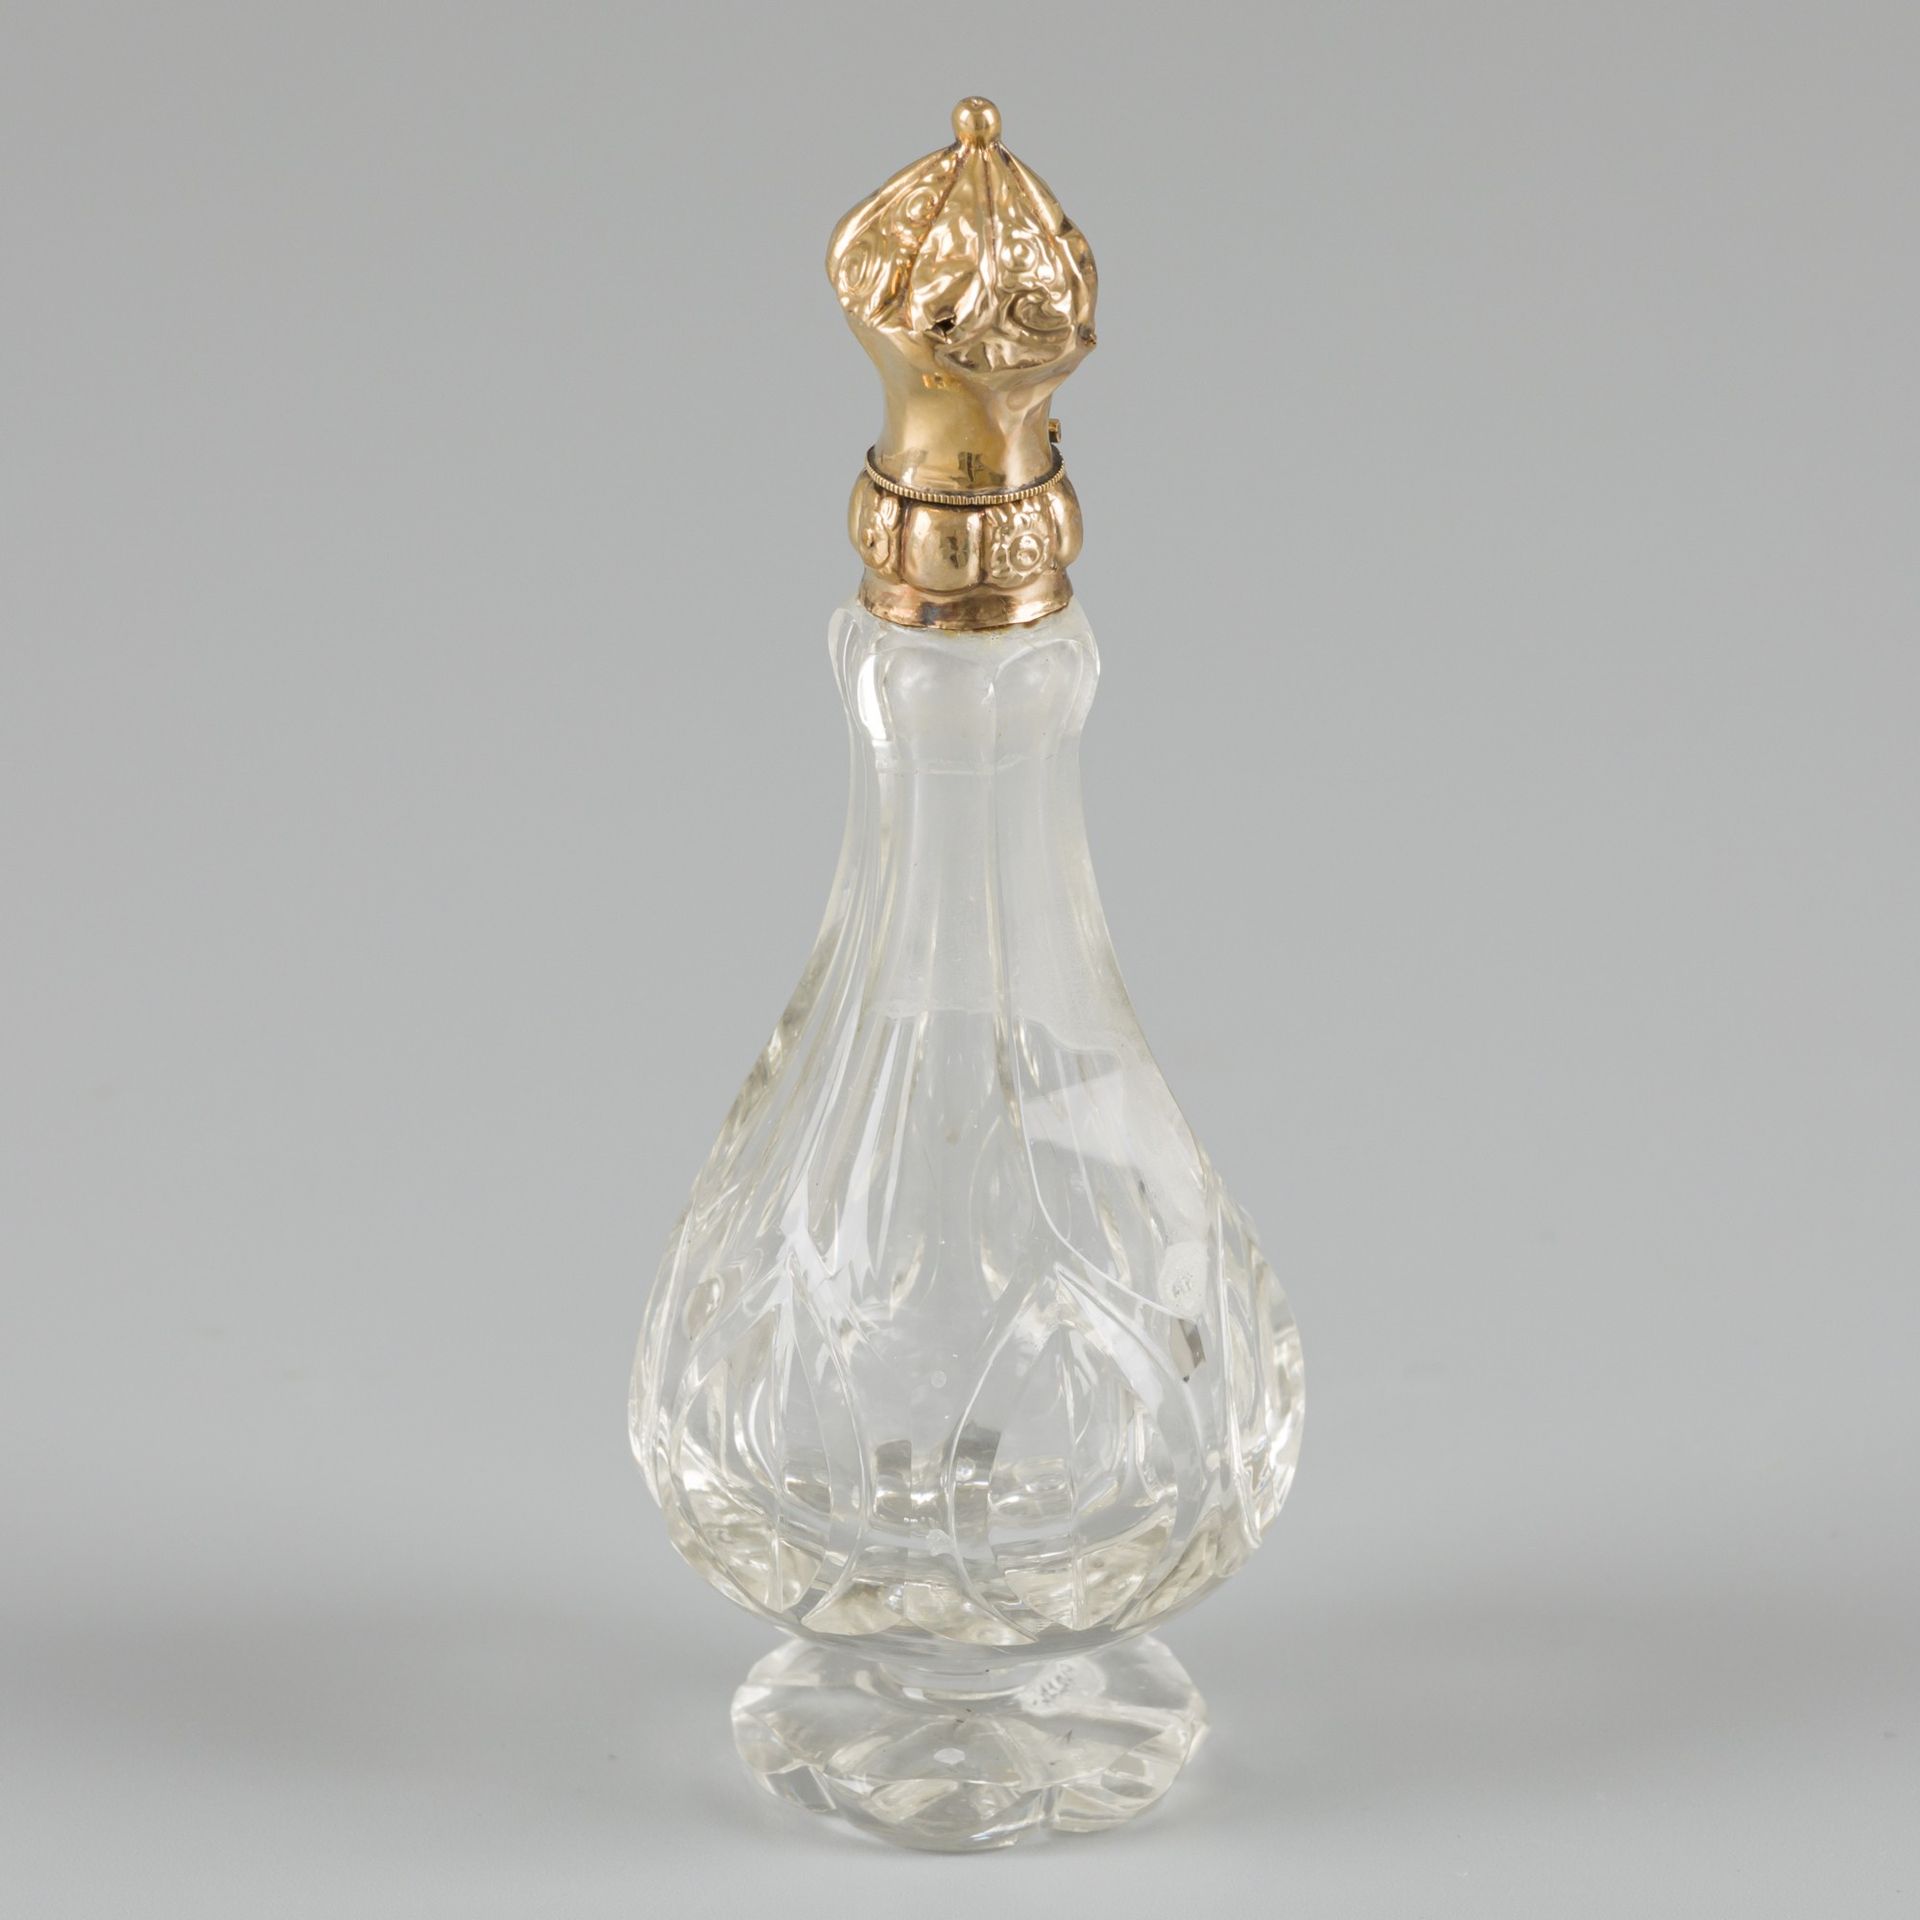 Perfume bottle gold. 切割的水晶玻璃瓶，金色的瓶盖上有浮雕的装饰，并配有原来的玻璃瓶塞。荷兰，19世纪末/20世纪初，印记：橡树叶-有磨损和&hellip;